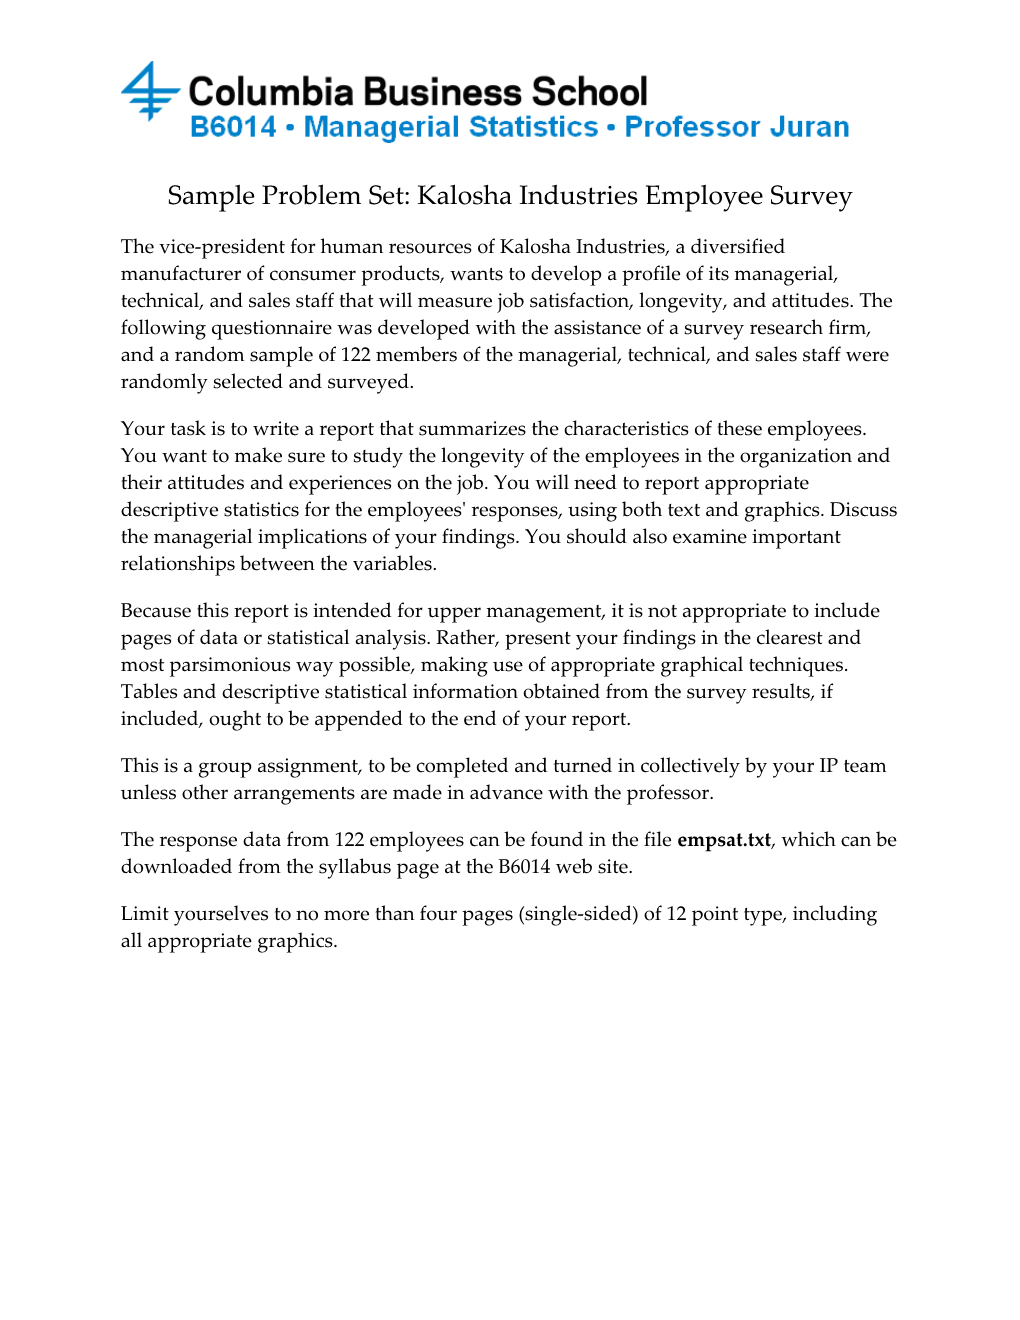 Sample Problem Set: Kalosha Industries Employee Survey